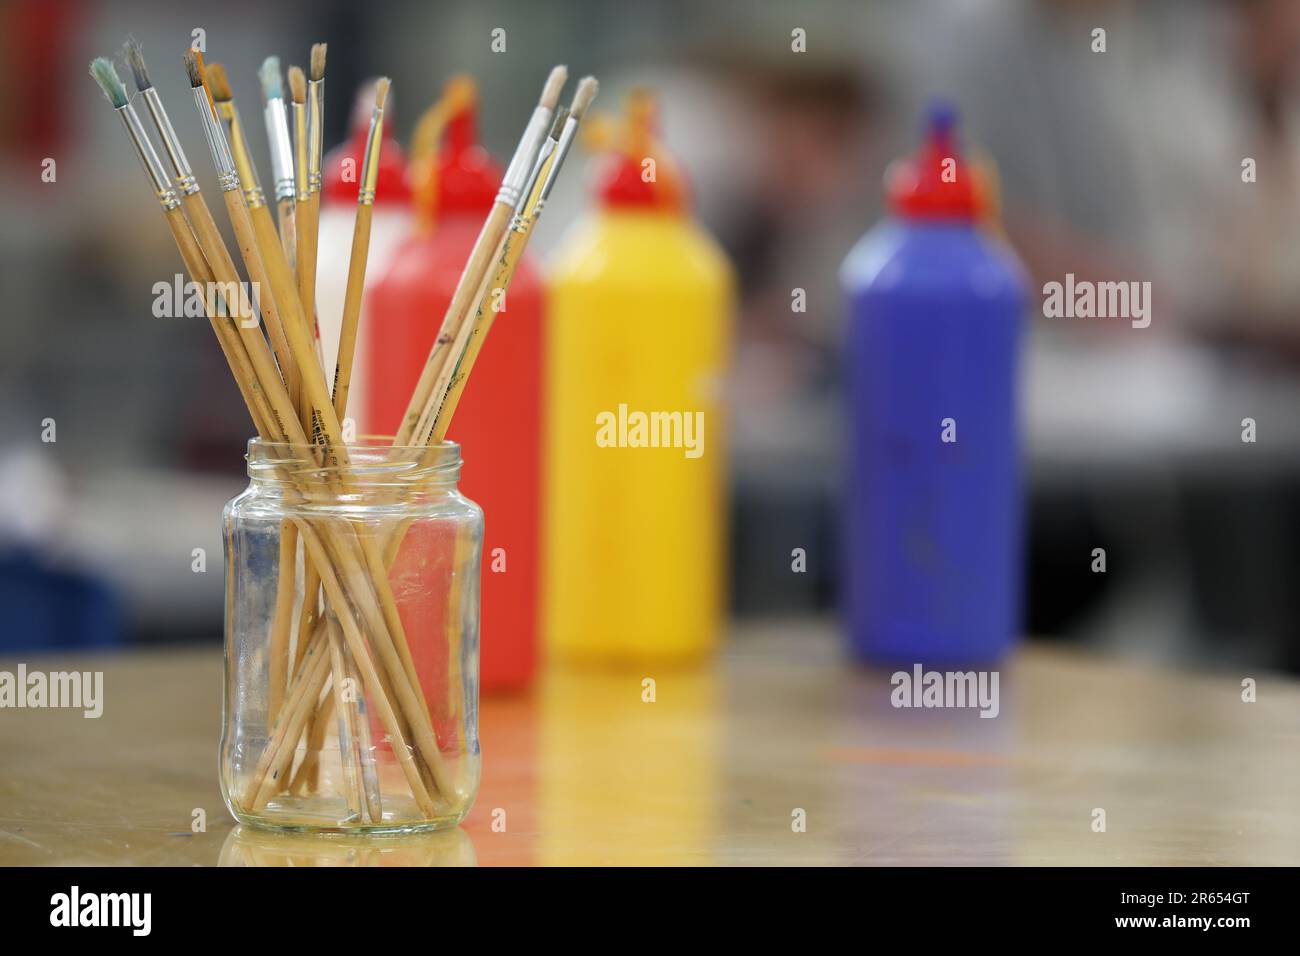 Nahaufnahme eines Klassenzimmers für visuelle Kunst mit einem Satz Pinsel, der in einem Glasgefäß steht. Primärfarben Rot, Gelb und Blau dahinter. Stockfoto